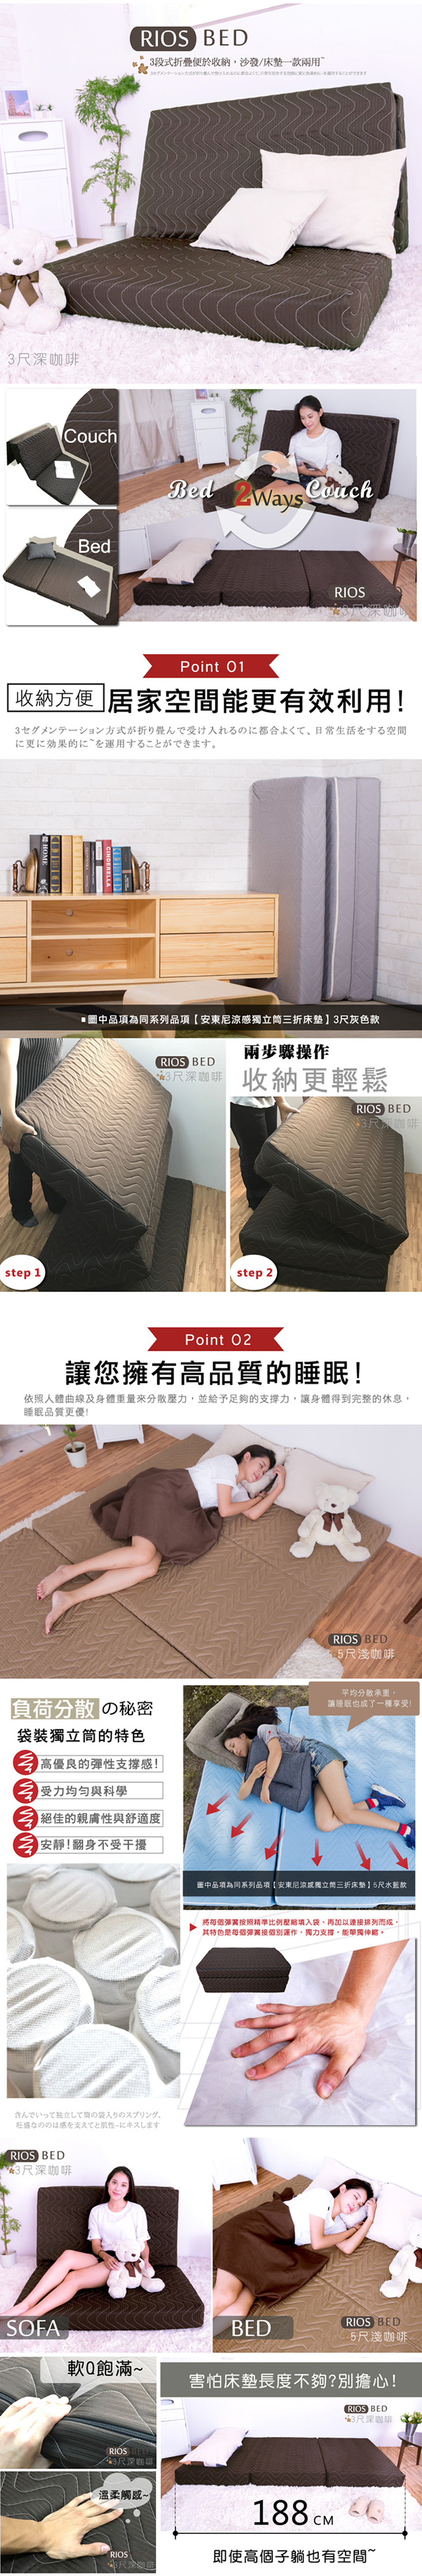 【BN-Home】Antony安東尼涼感獨立筒床墊 5尺雙人(床墊/涼感/ 沙發